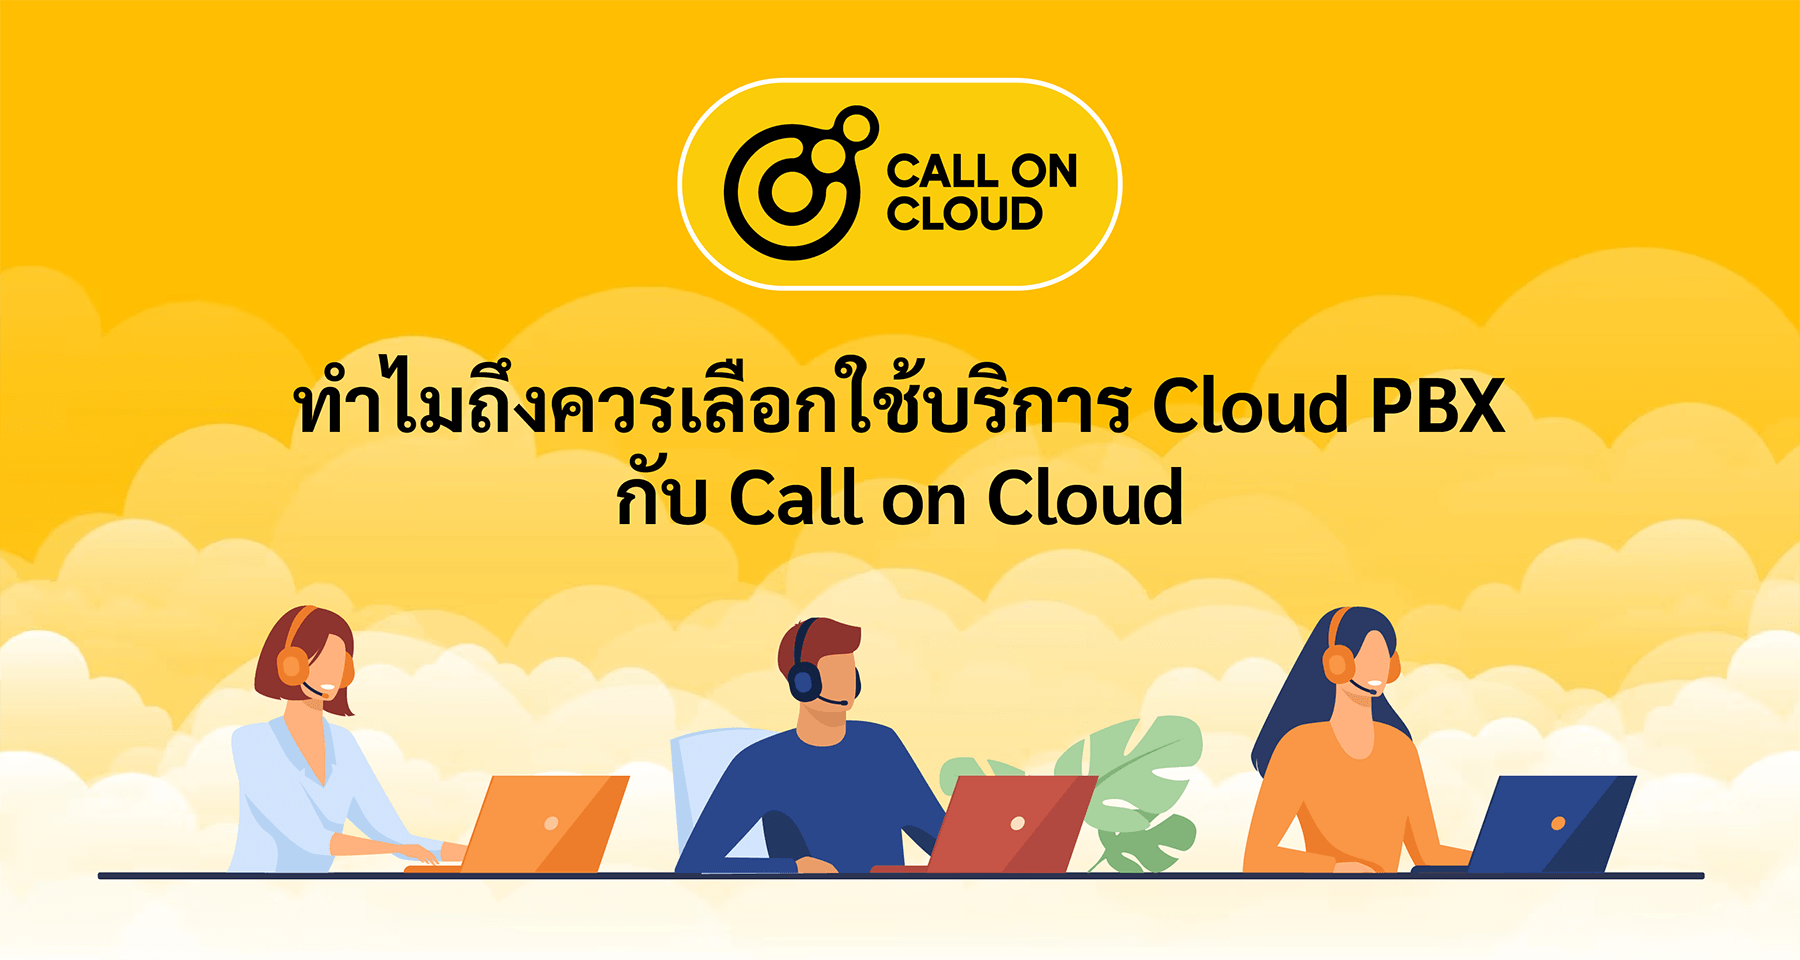 ทำไมถึงควรเลือกใช้บริการ Cloud PBX กับ Call on Cloud